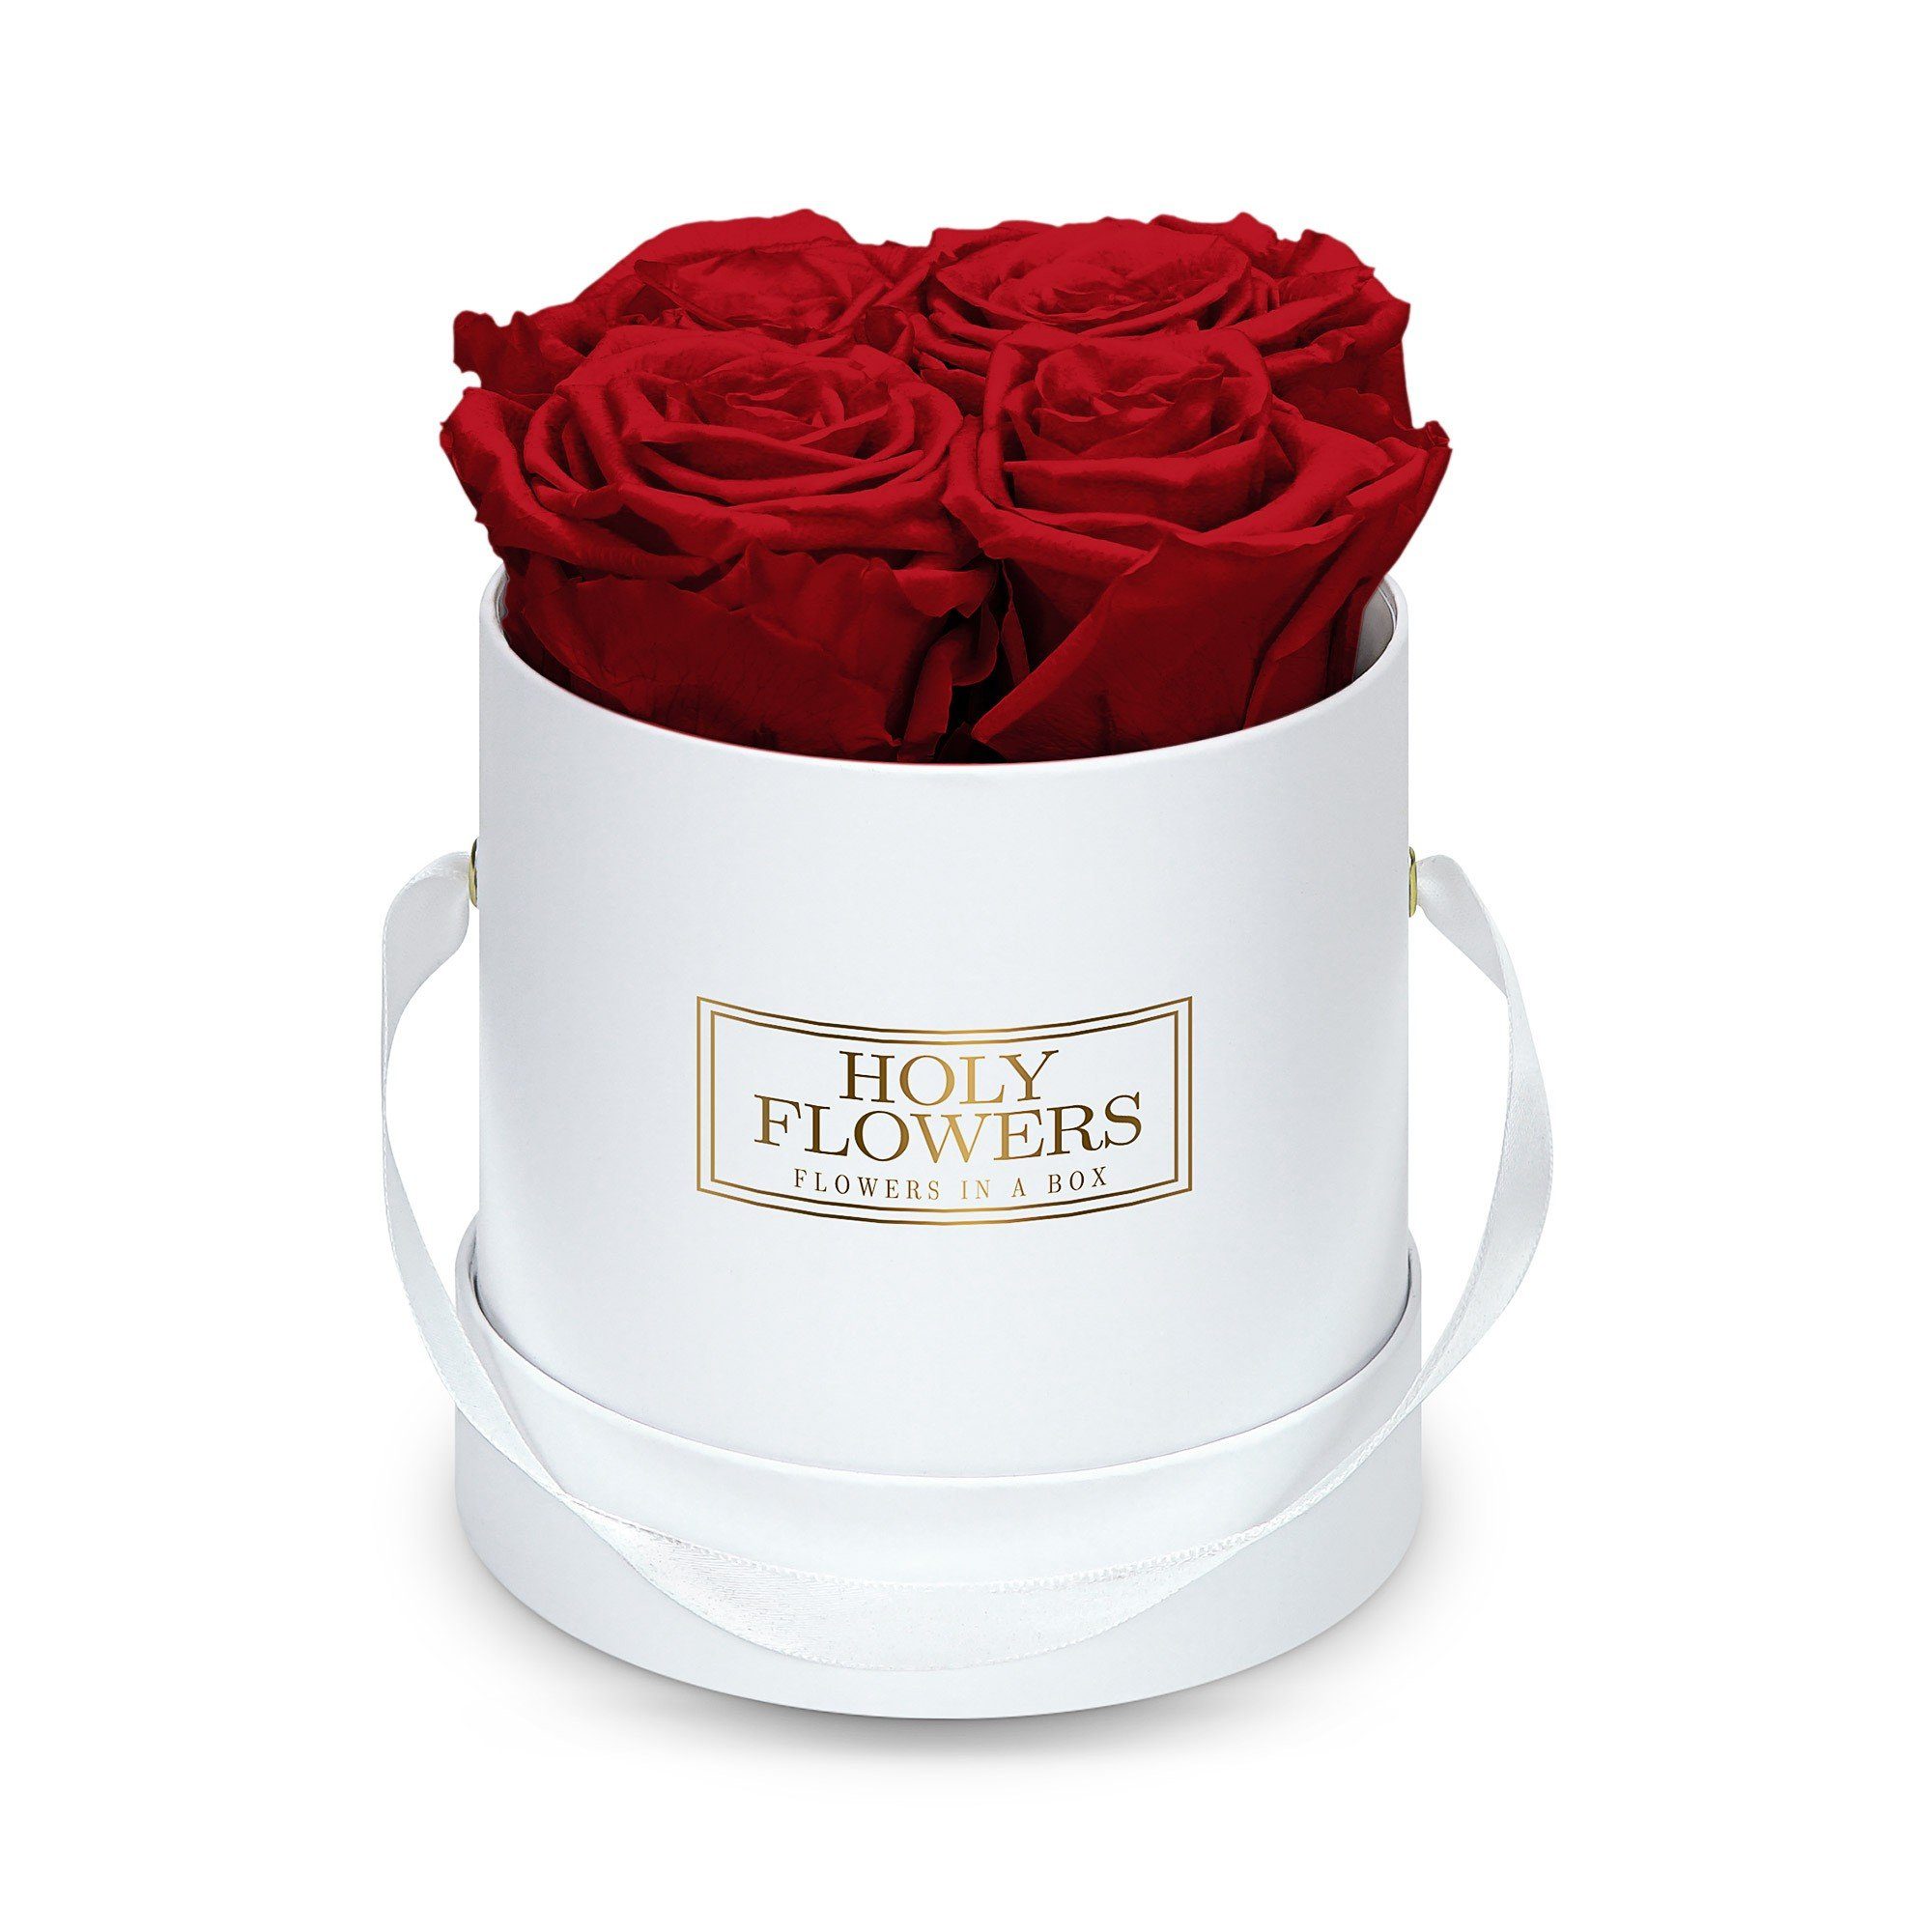 Kunstblume Runde Rosenbox in weiß mit 4-5 Infinity Rosen I 3 Jahre haltbar I Echte, duftende konservierte Blumen I by Raul Richter Infinity Rose, Holy Flowers, Höhe 11 cm Heritage Red